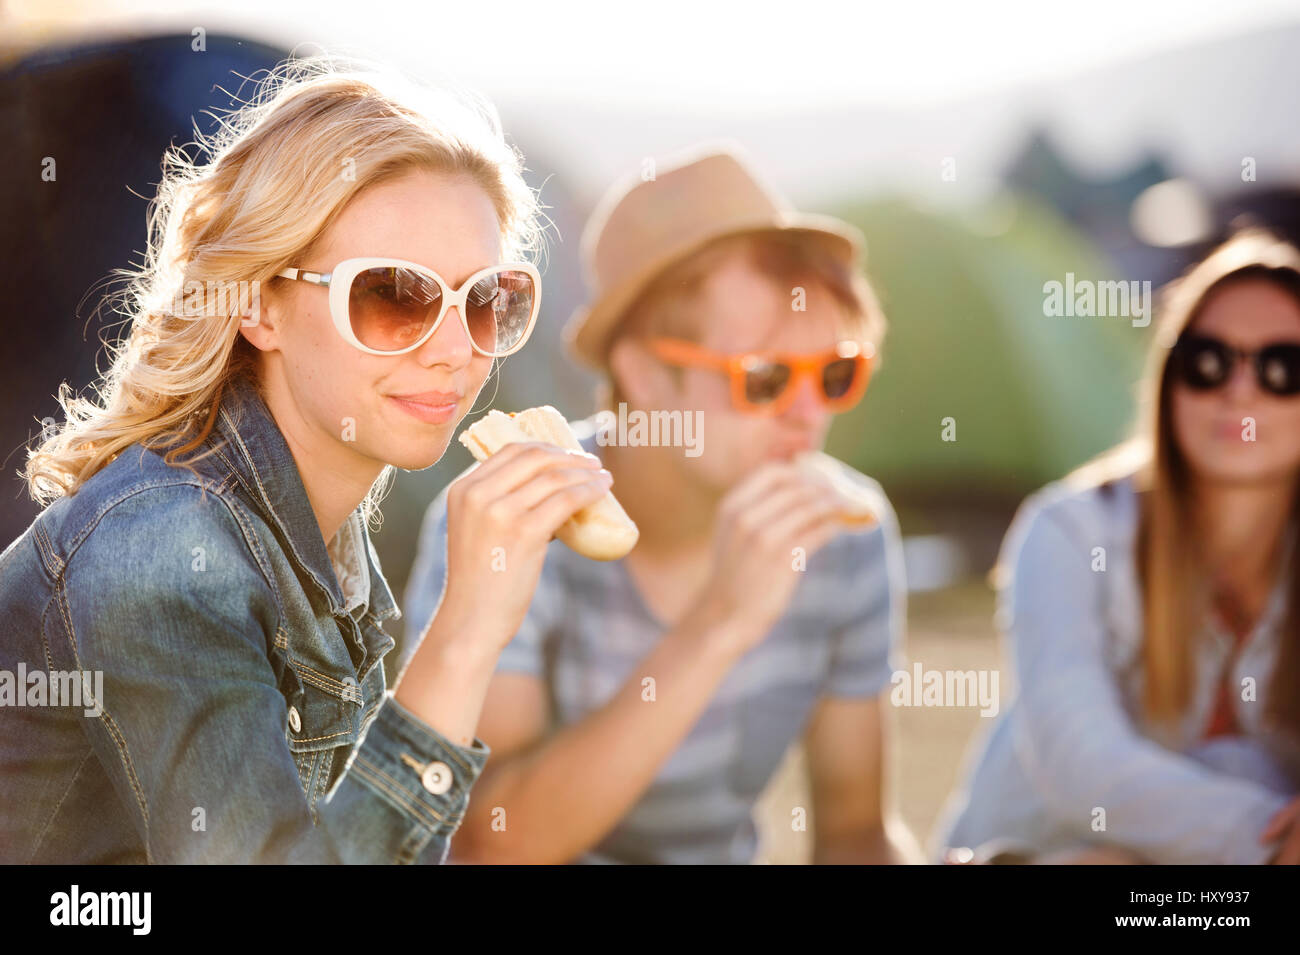 Gruppe von Teenager-Jungen und Mädchen im Sommer-Musikfestival, sitzen auf dem Boden vor Zelten Essen Stockfoto